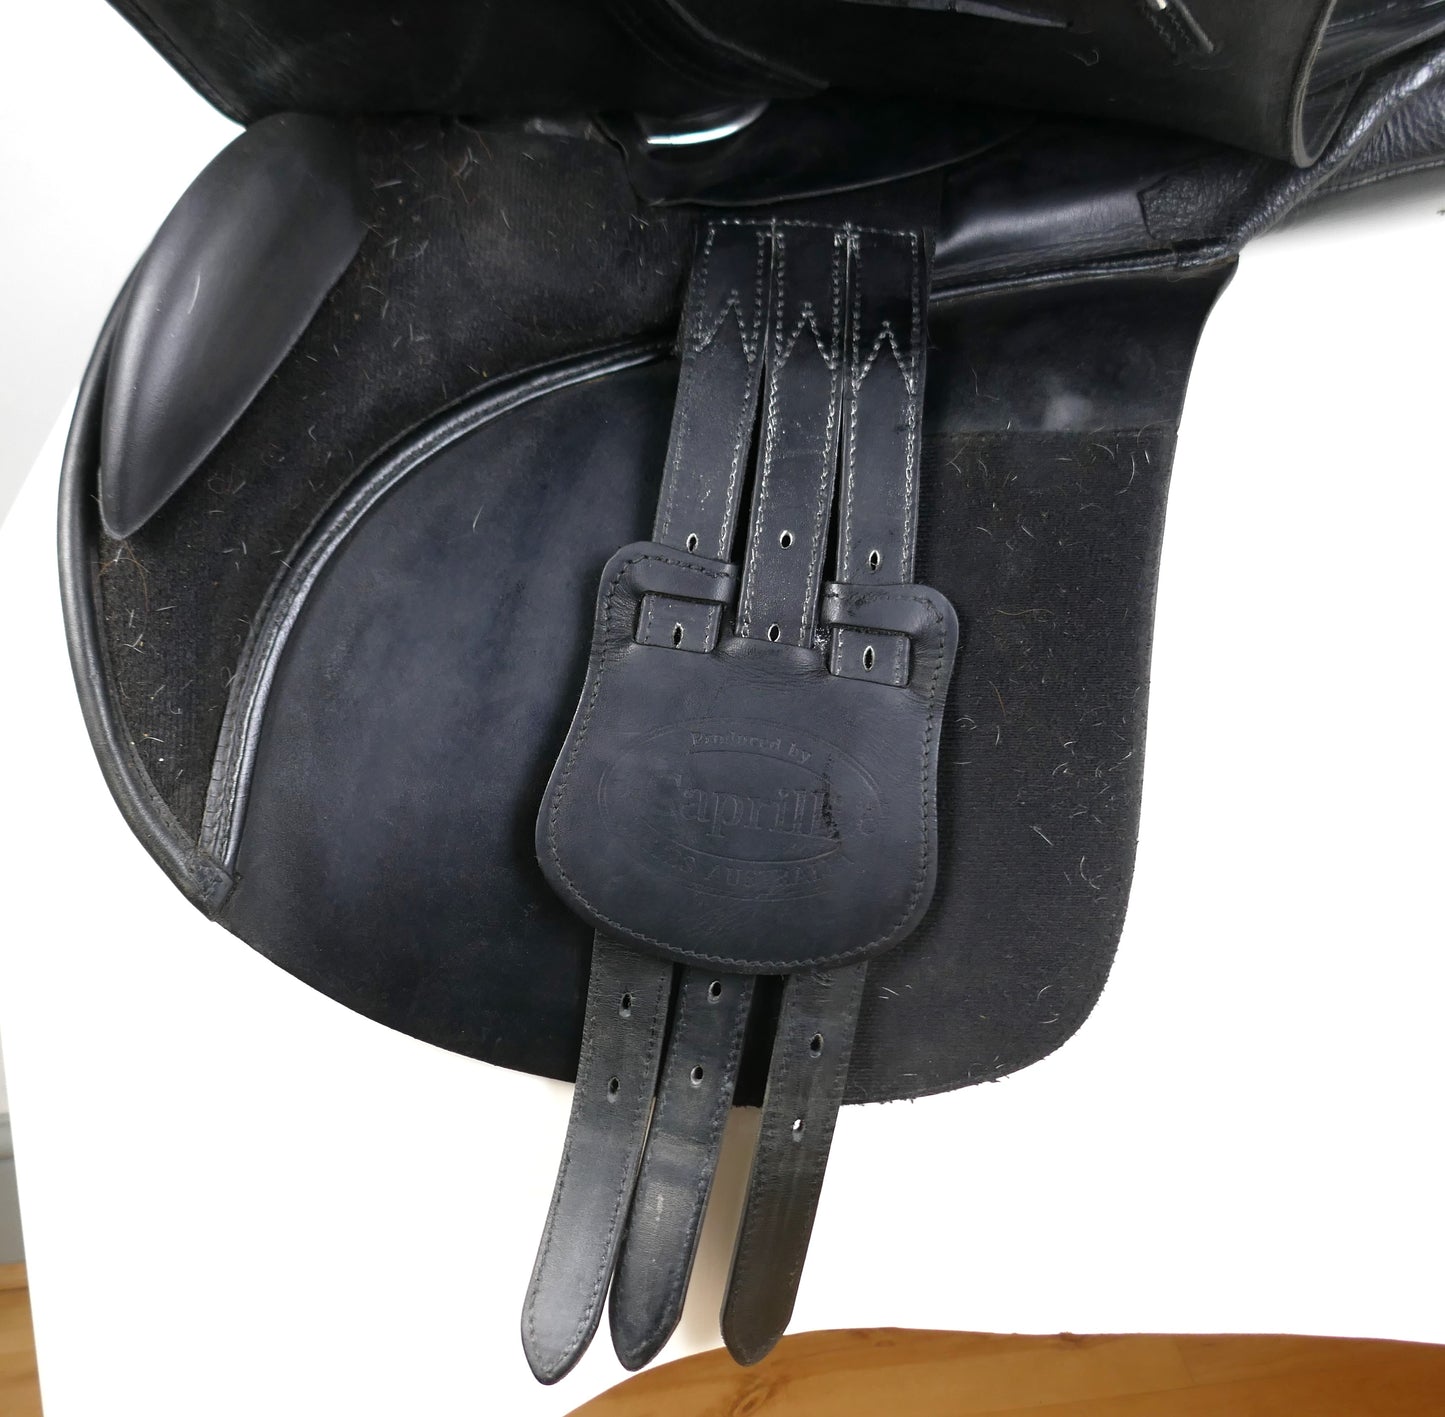 Bates Cair Caprilli Close Contact Jumping Saddle - 17.5" Adjustable Black TF67